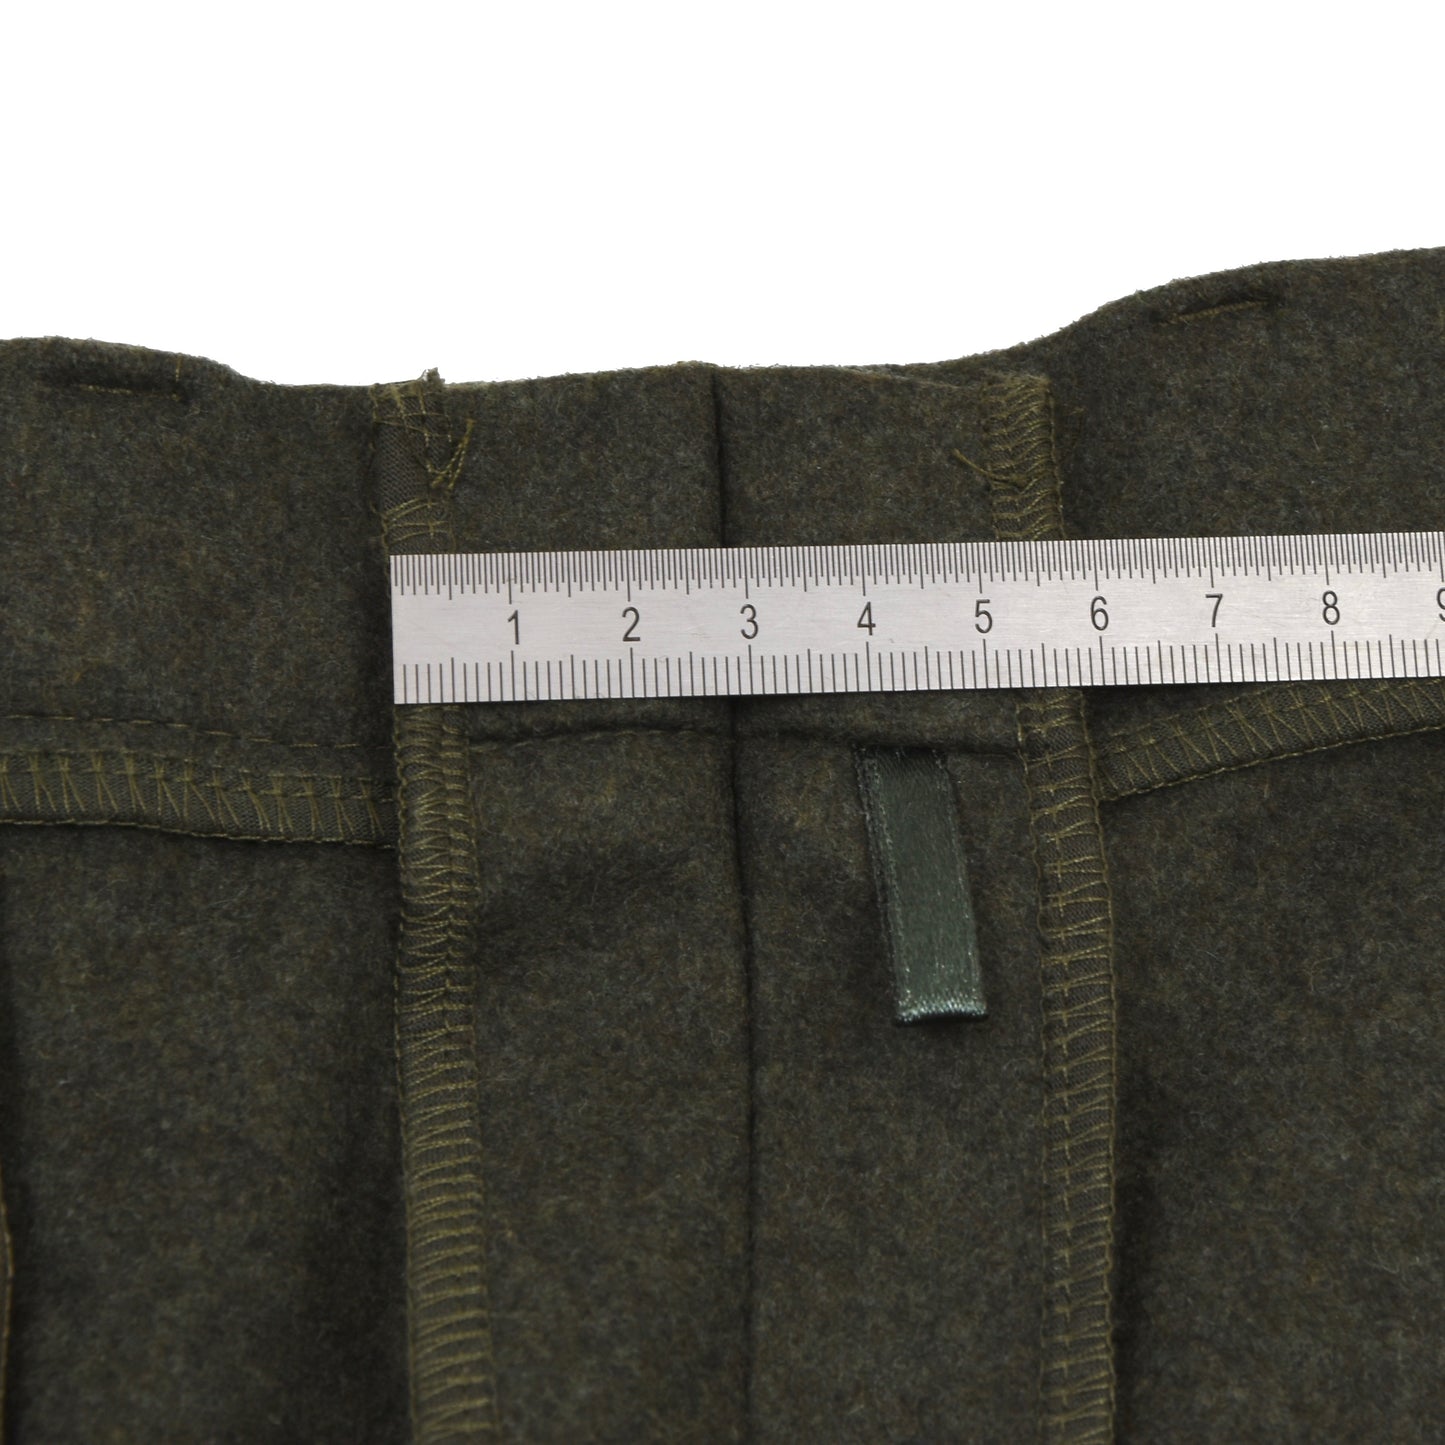 Hoesmann Country Wear Wool Blend Knickerbockers/Breeks Size 54 - Loden Green